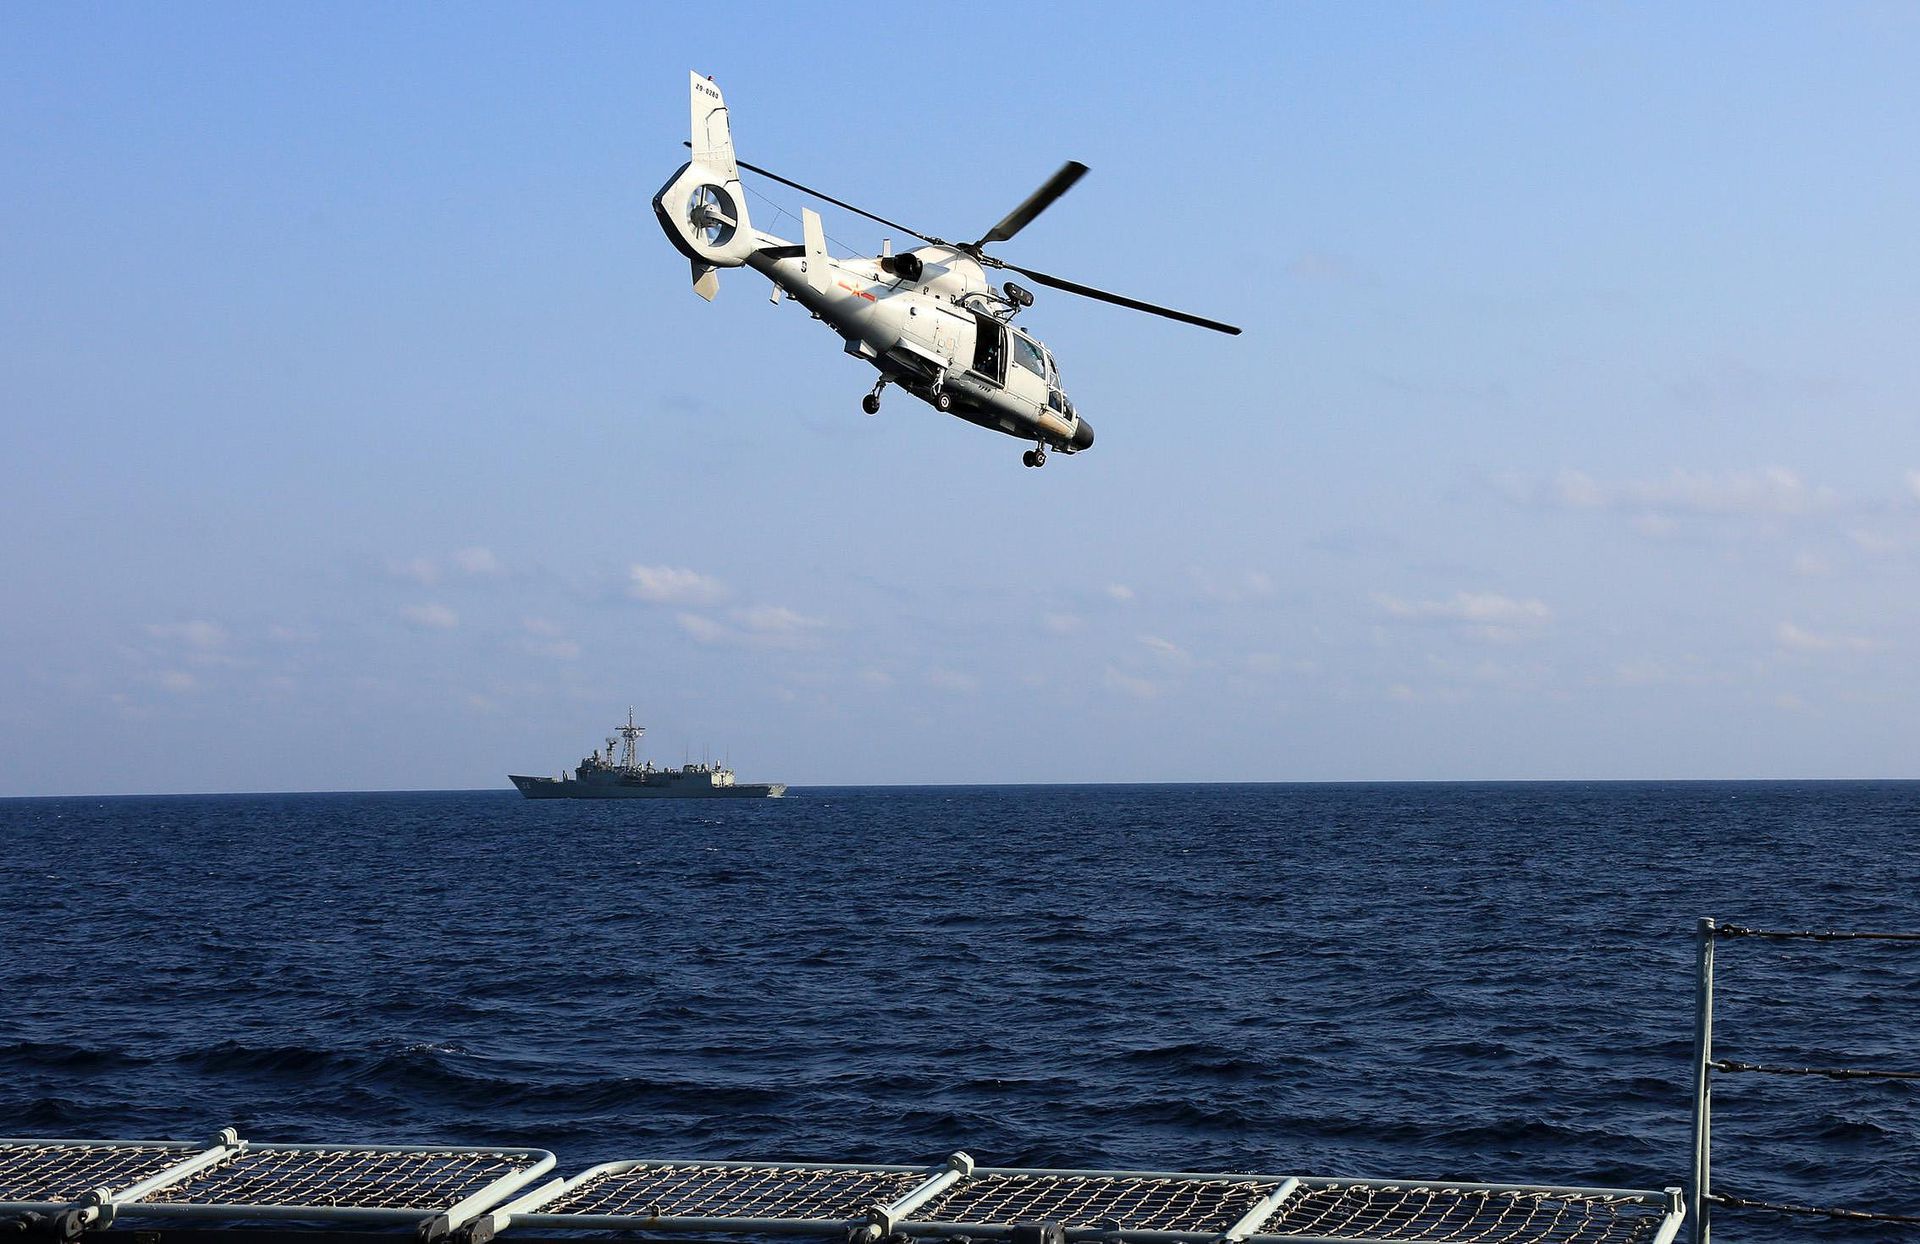 中国海军主力舰载多用途直升机直-9C。直-9C直升机系由陆基直-9直升机发展而来，属于轻型直升机，载荷与航程难以兼顾，并不适宜作为反潜直升机，在中国海军中更多的是作为多用途直升机使用。（视觉中国）